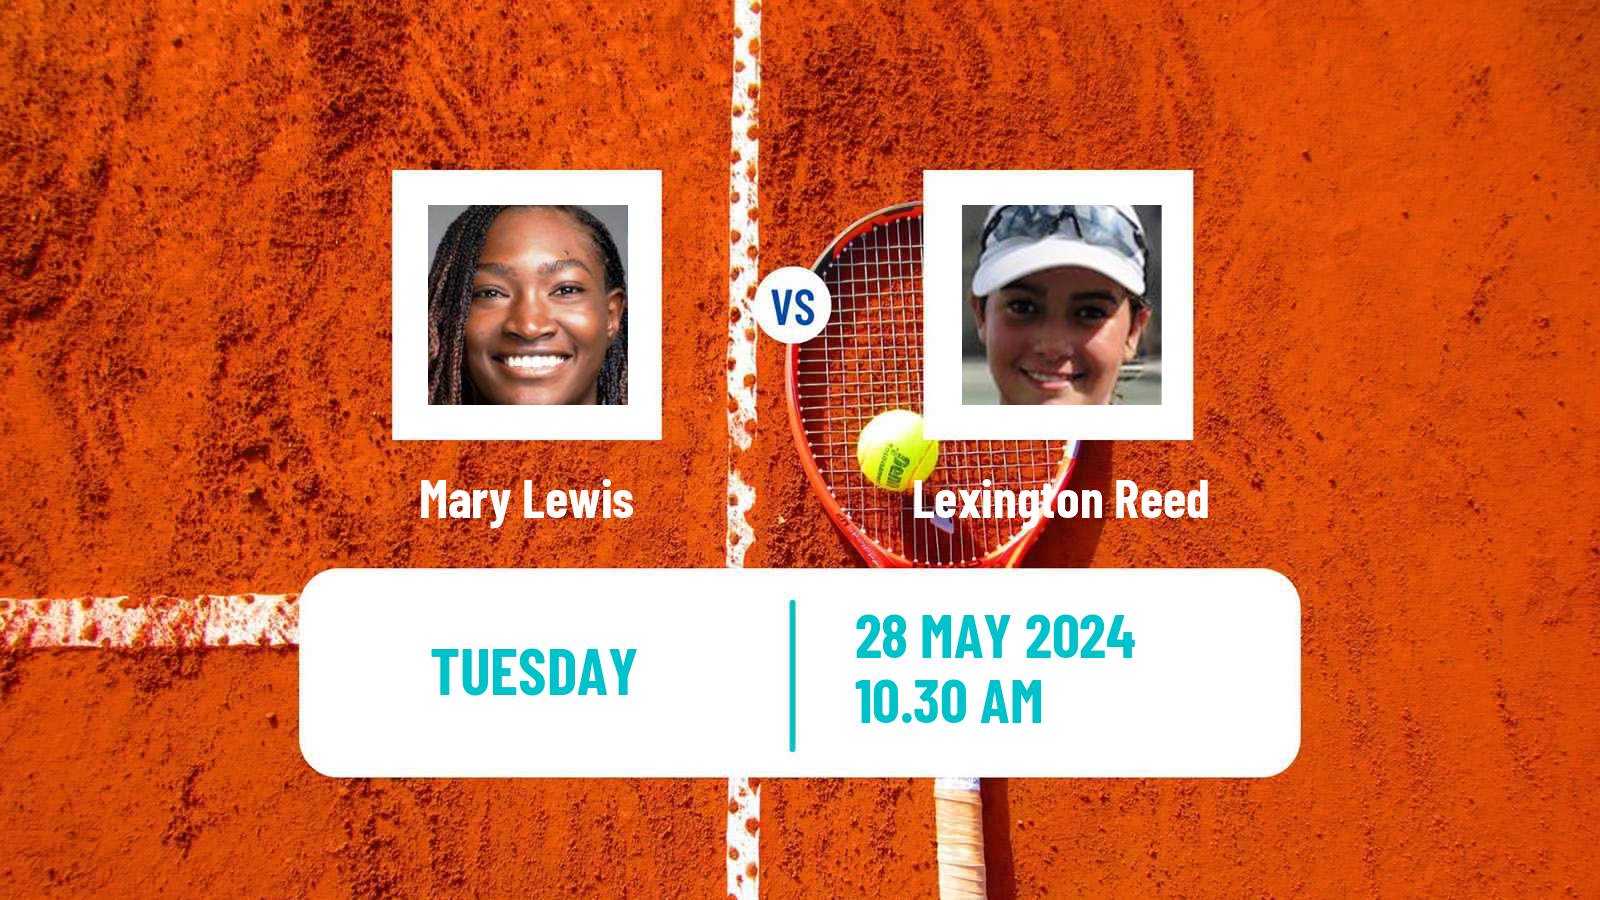 Tennis ITF W35 Santo Domingo 4 Women Mary Lewis - Lexington Reed